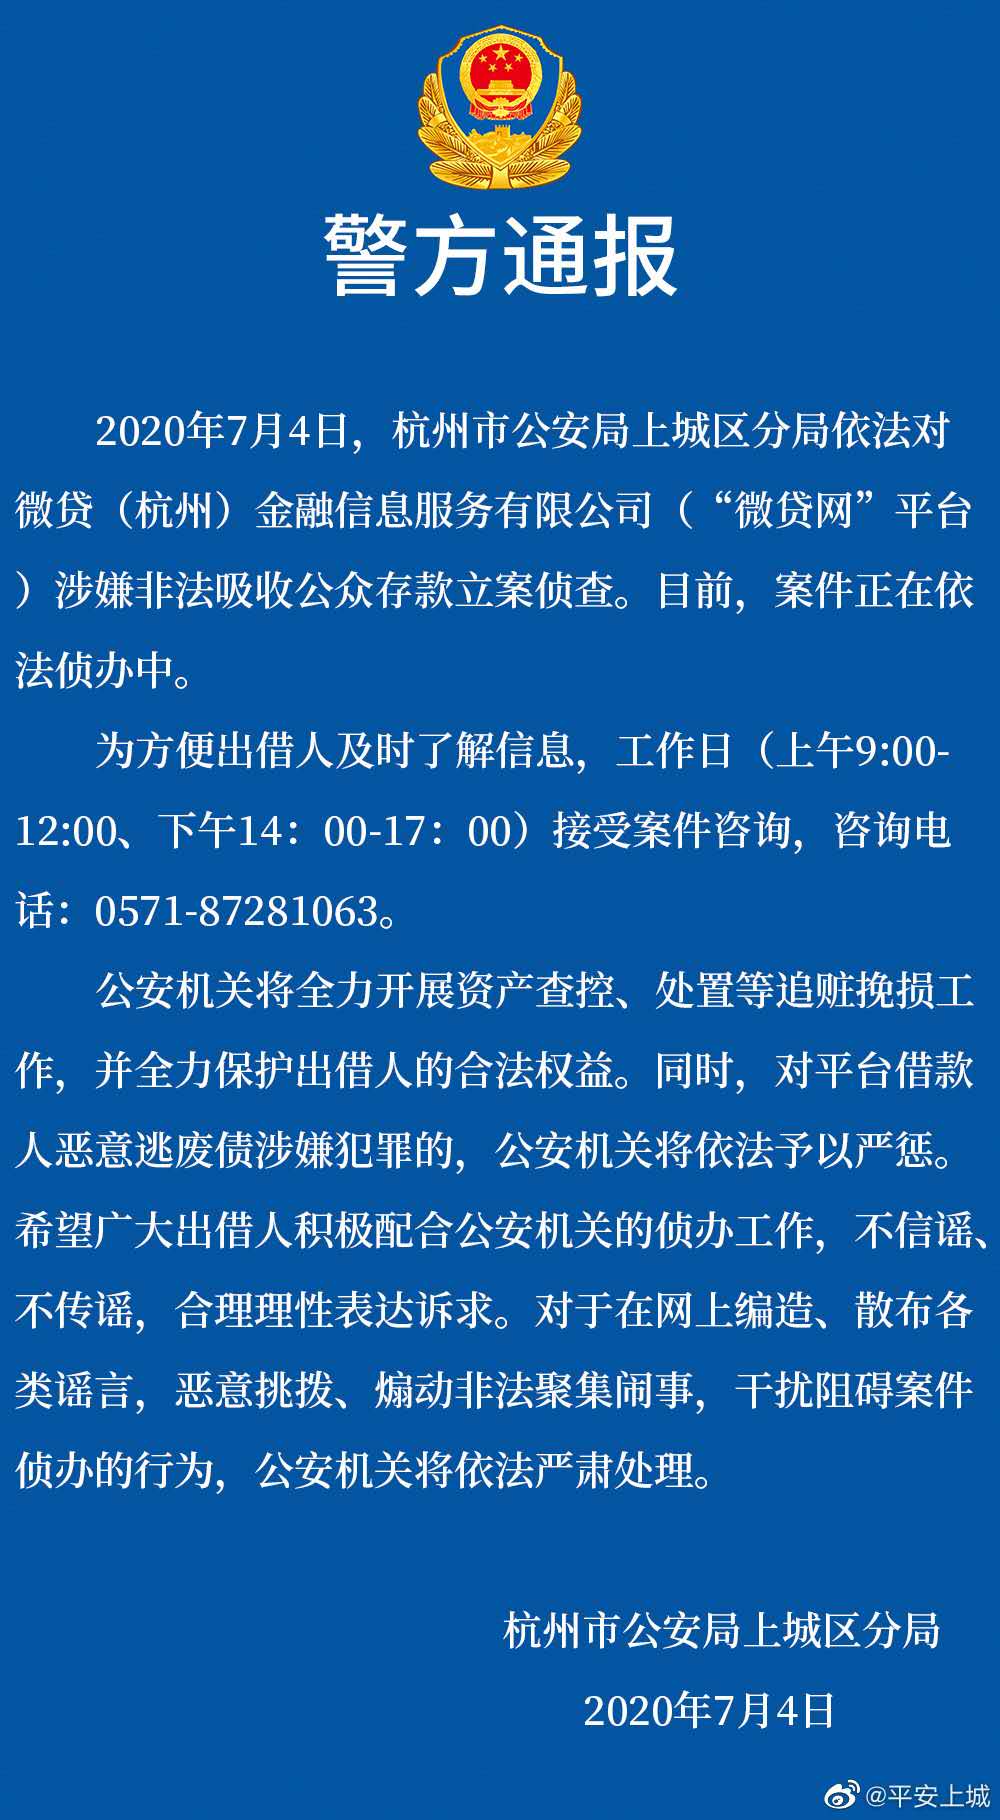 微贷网涉嫌非吸被杭州警方立案，一个月前曾宣布退出网贷业务